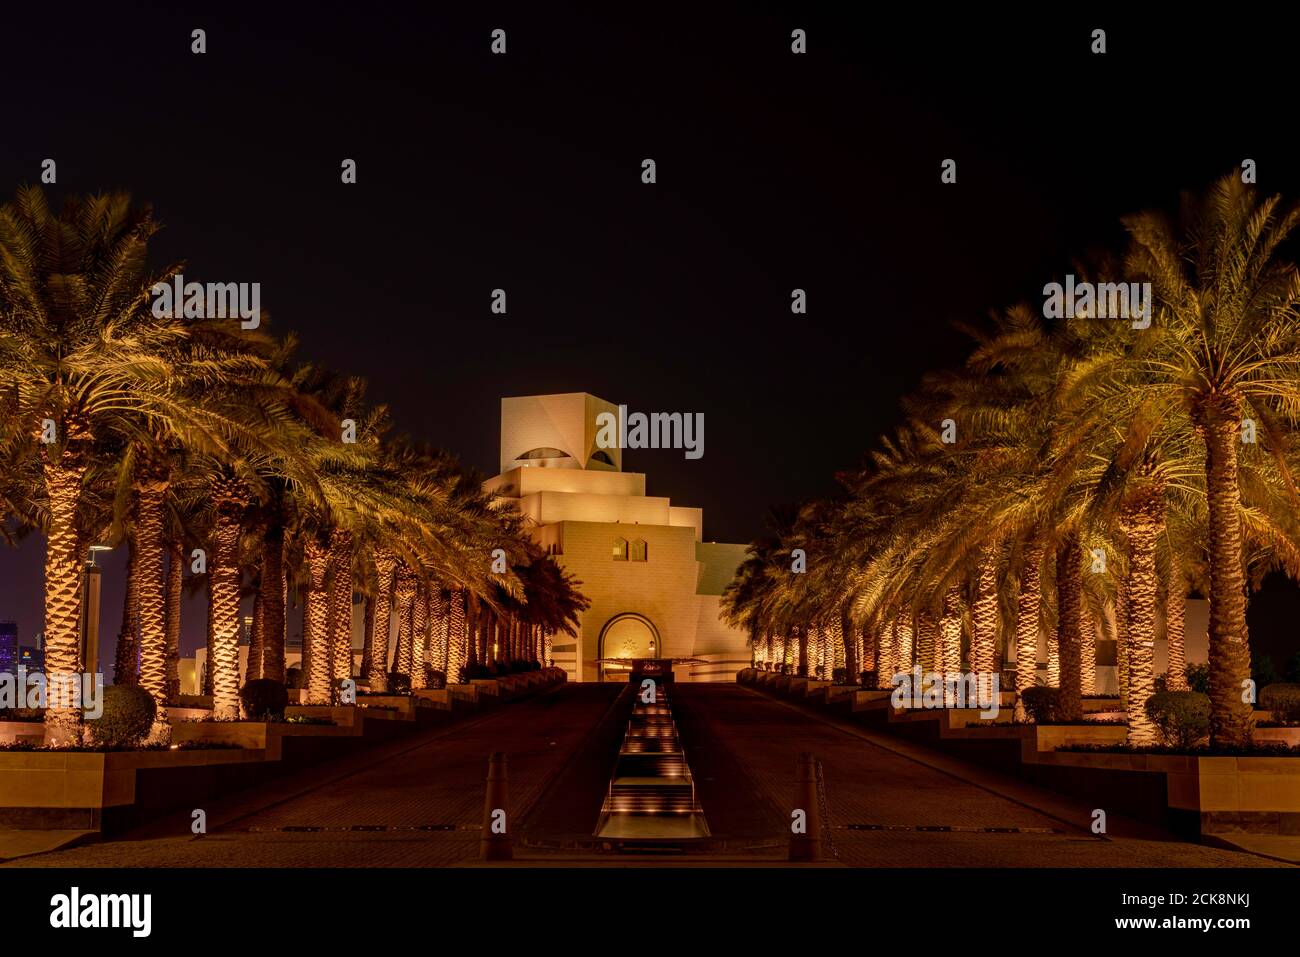 Doha, Katar - 26. August 2020: Nachtansicht des Qatar City Wahrzeichen, Museum of Islamic Art (MIA), präsentiert moderne arabische Architektur und Konstruktion Stockfoto